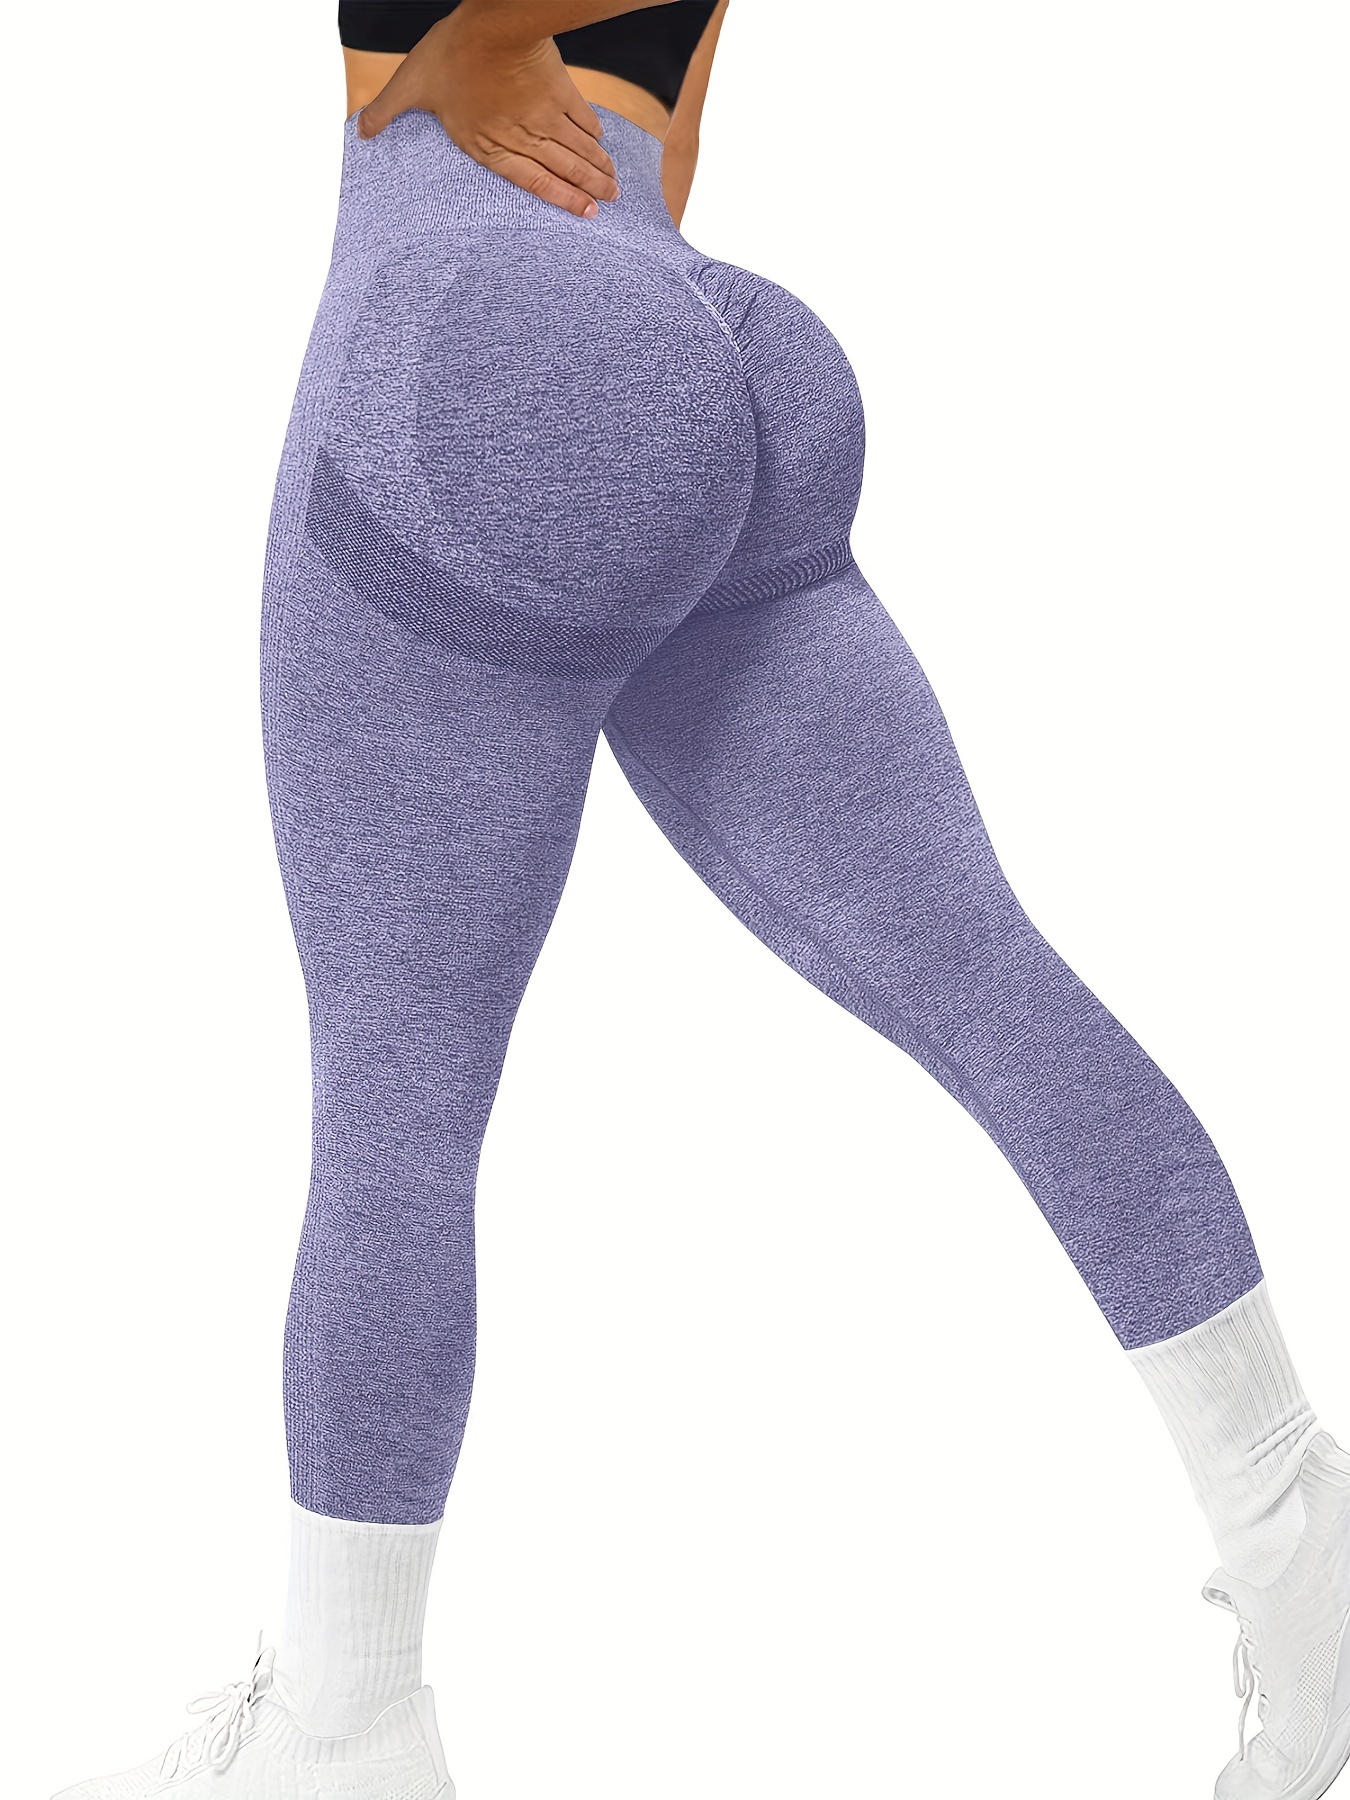 Seamless Butt Lifting Workout Leggings For Women High Waist Yoga Pants